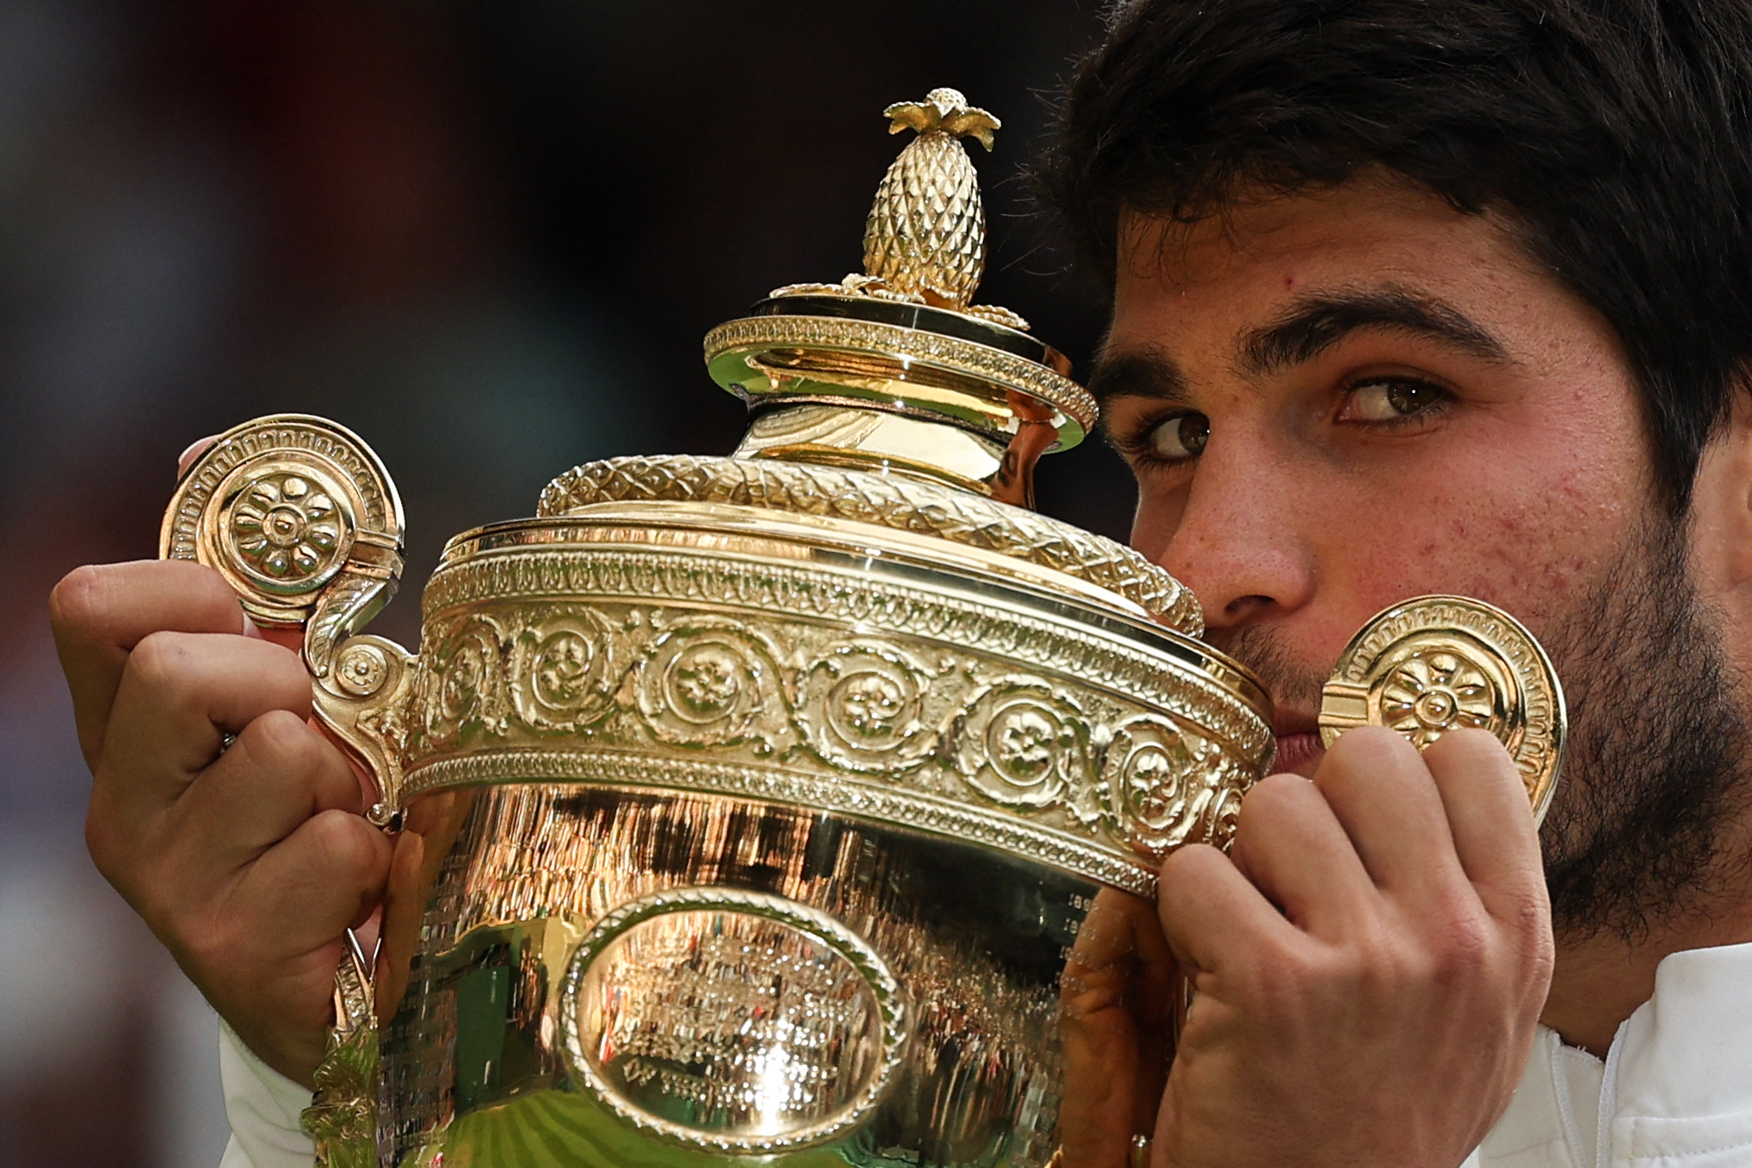 Qui est Carlos Alcaraz, qui vient de remporter Wimbledon face à Djokovic ?